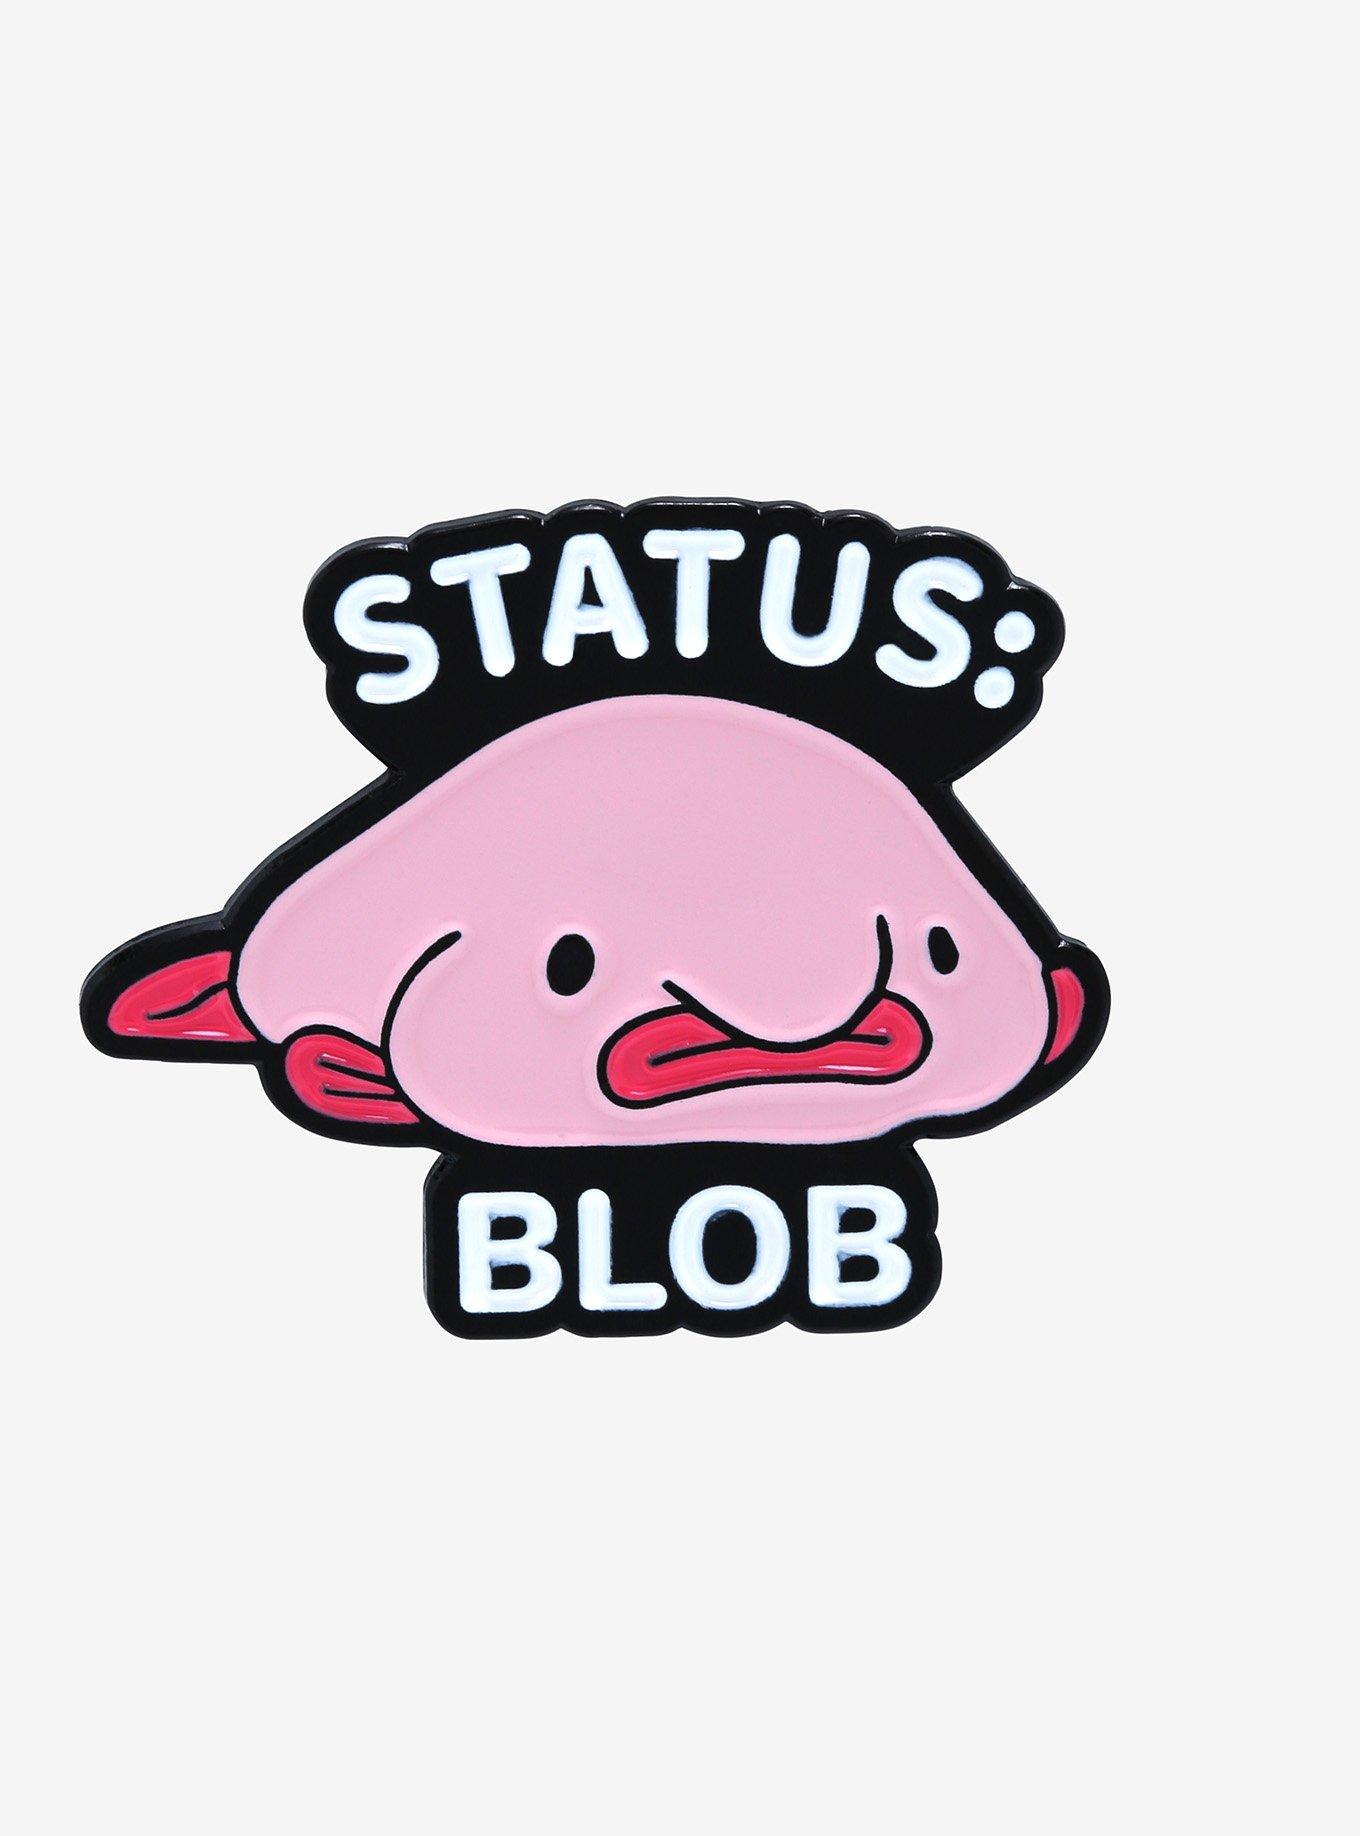 Blob Fish - Pop Culture - Pin